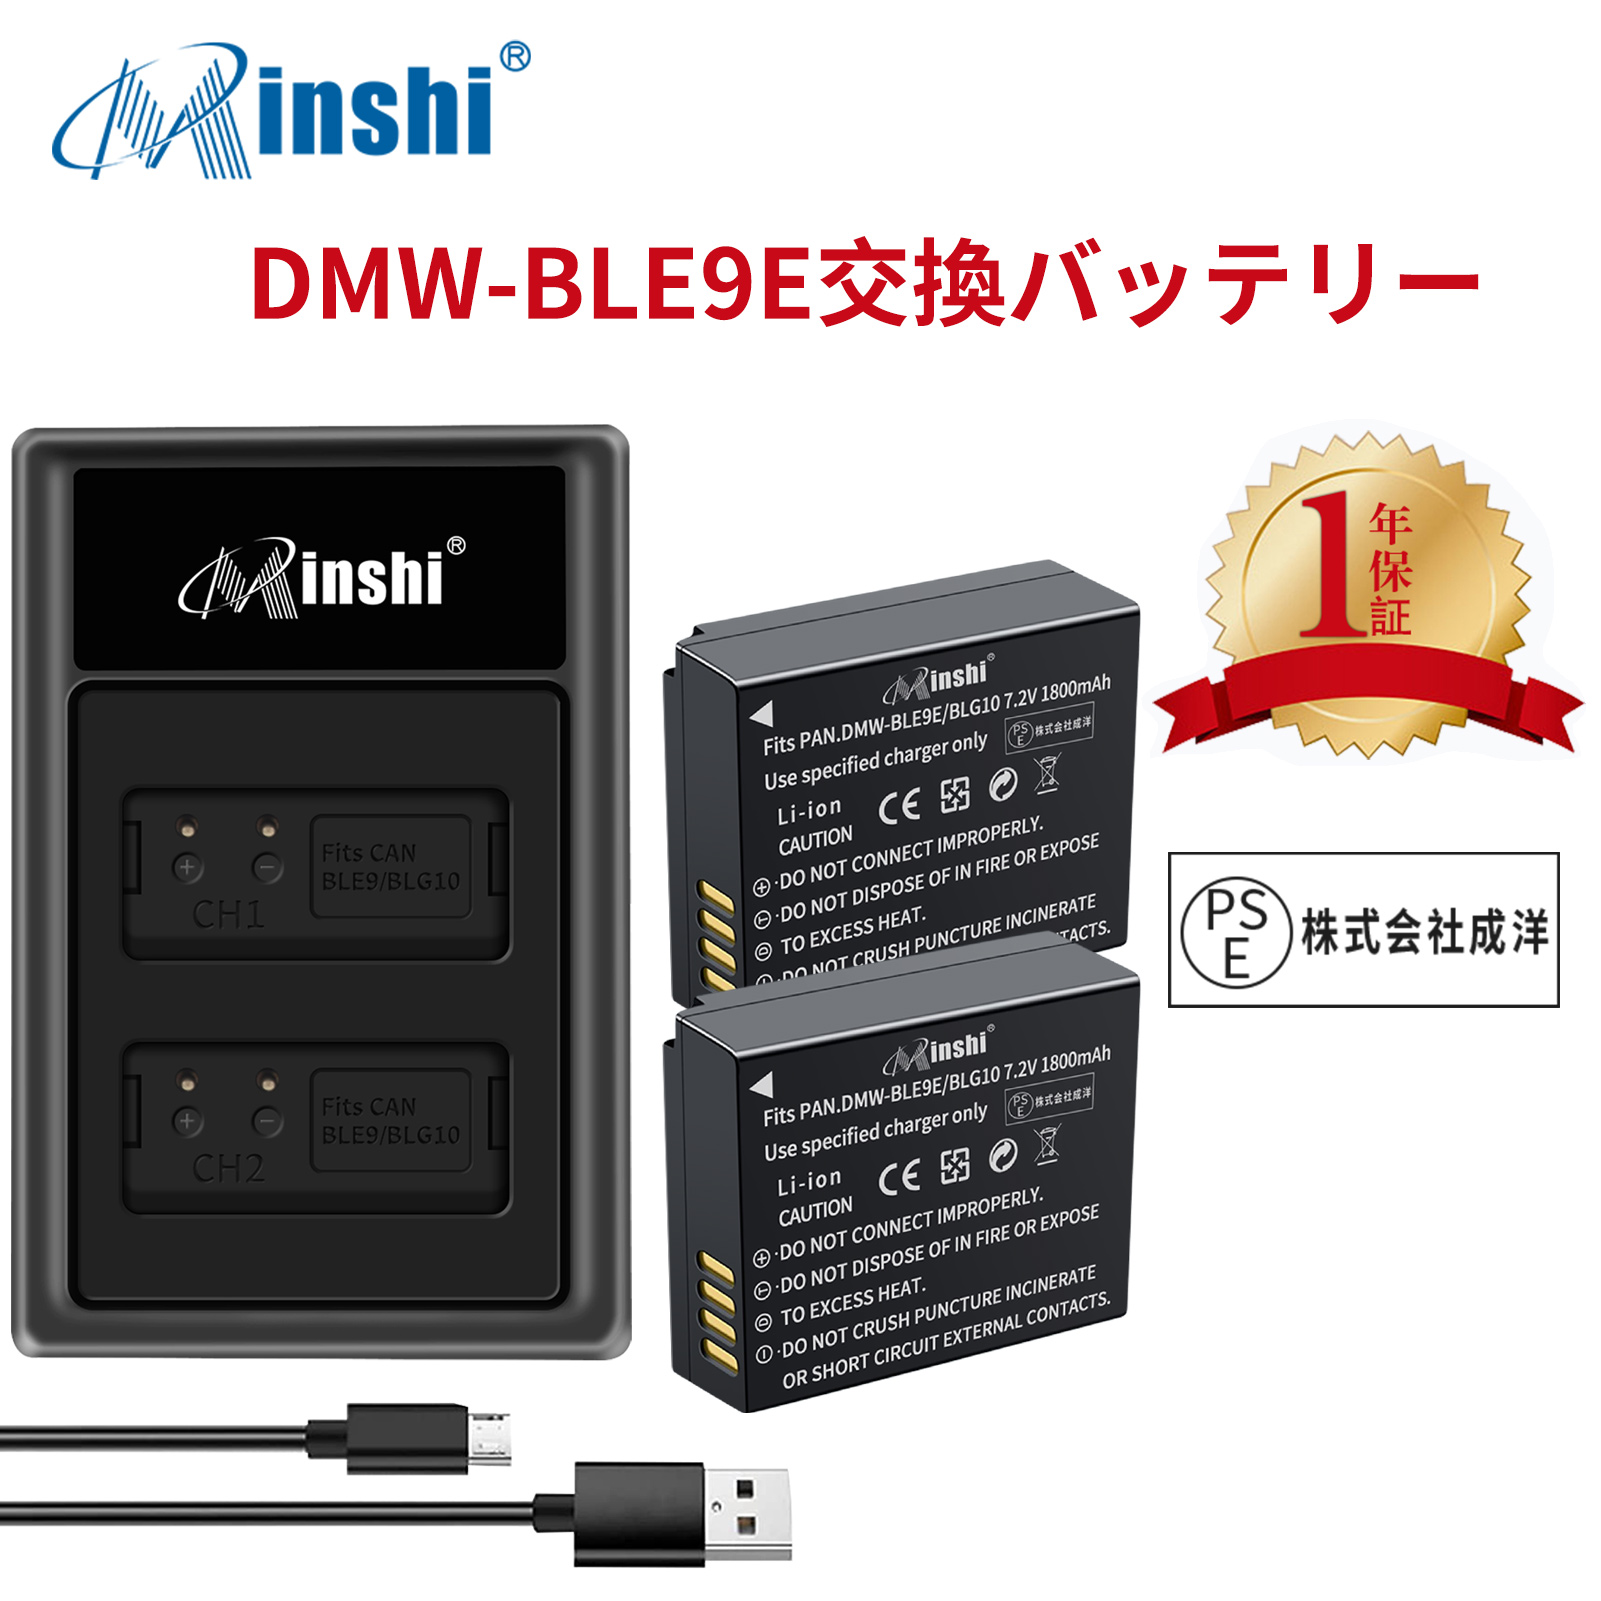 【２個セット】Panasonic パナソニック対応 DMW-BLH7 互換 バッテリー 2個 と DMW-BTC9 互換 USB充電器 セット minshi